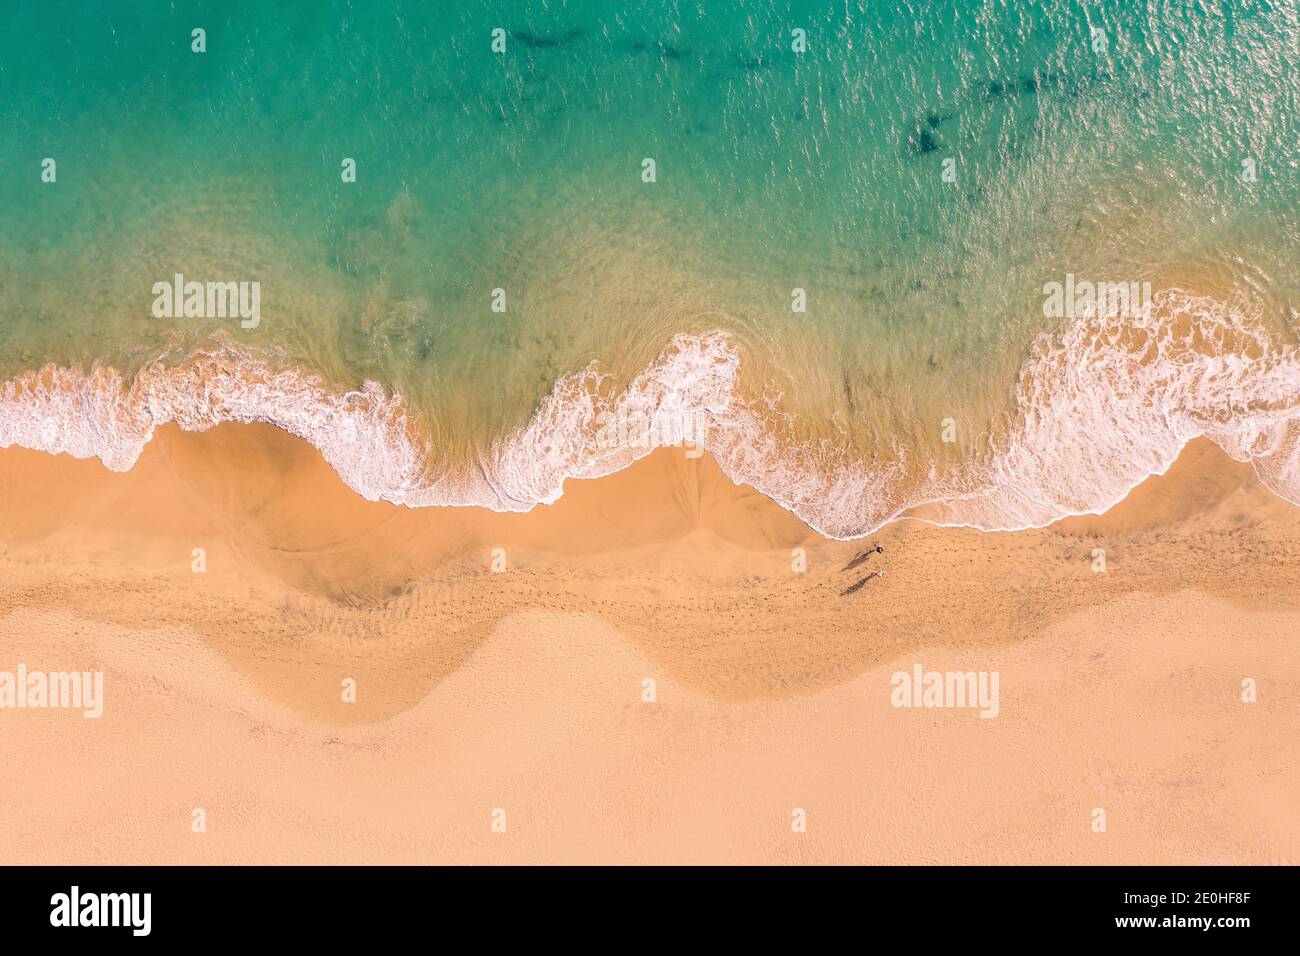 Vue aérienne de haut en bas de la magnifique côte atlantique de l'océan avec des eaux turquoise cristallines et une plage de sable, des vagues se déroulant dans le rivage Banque D'Images